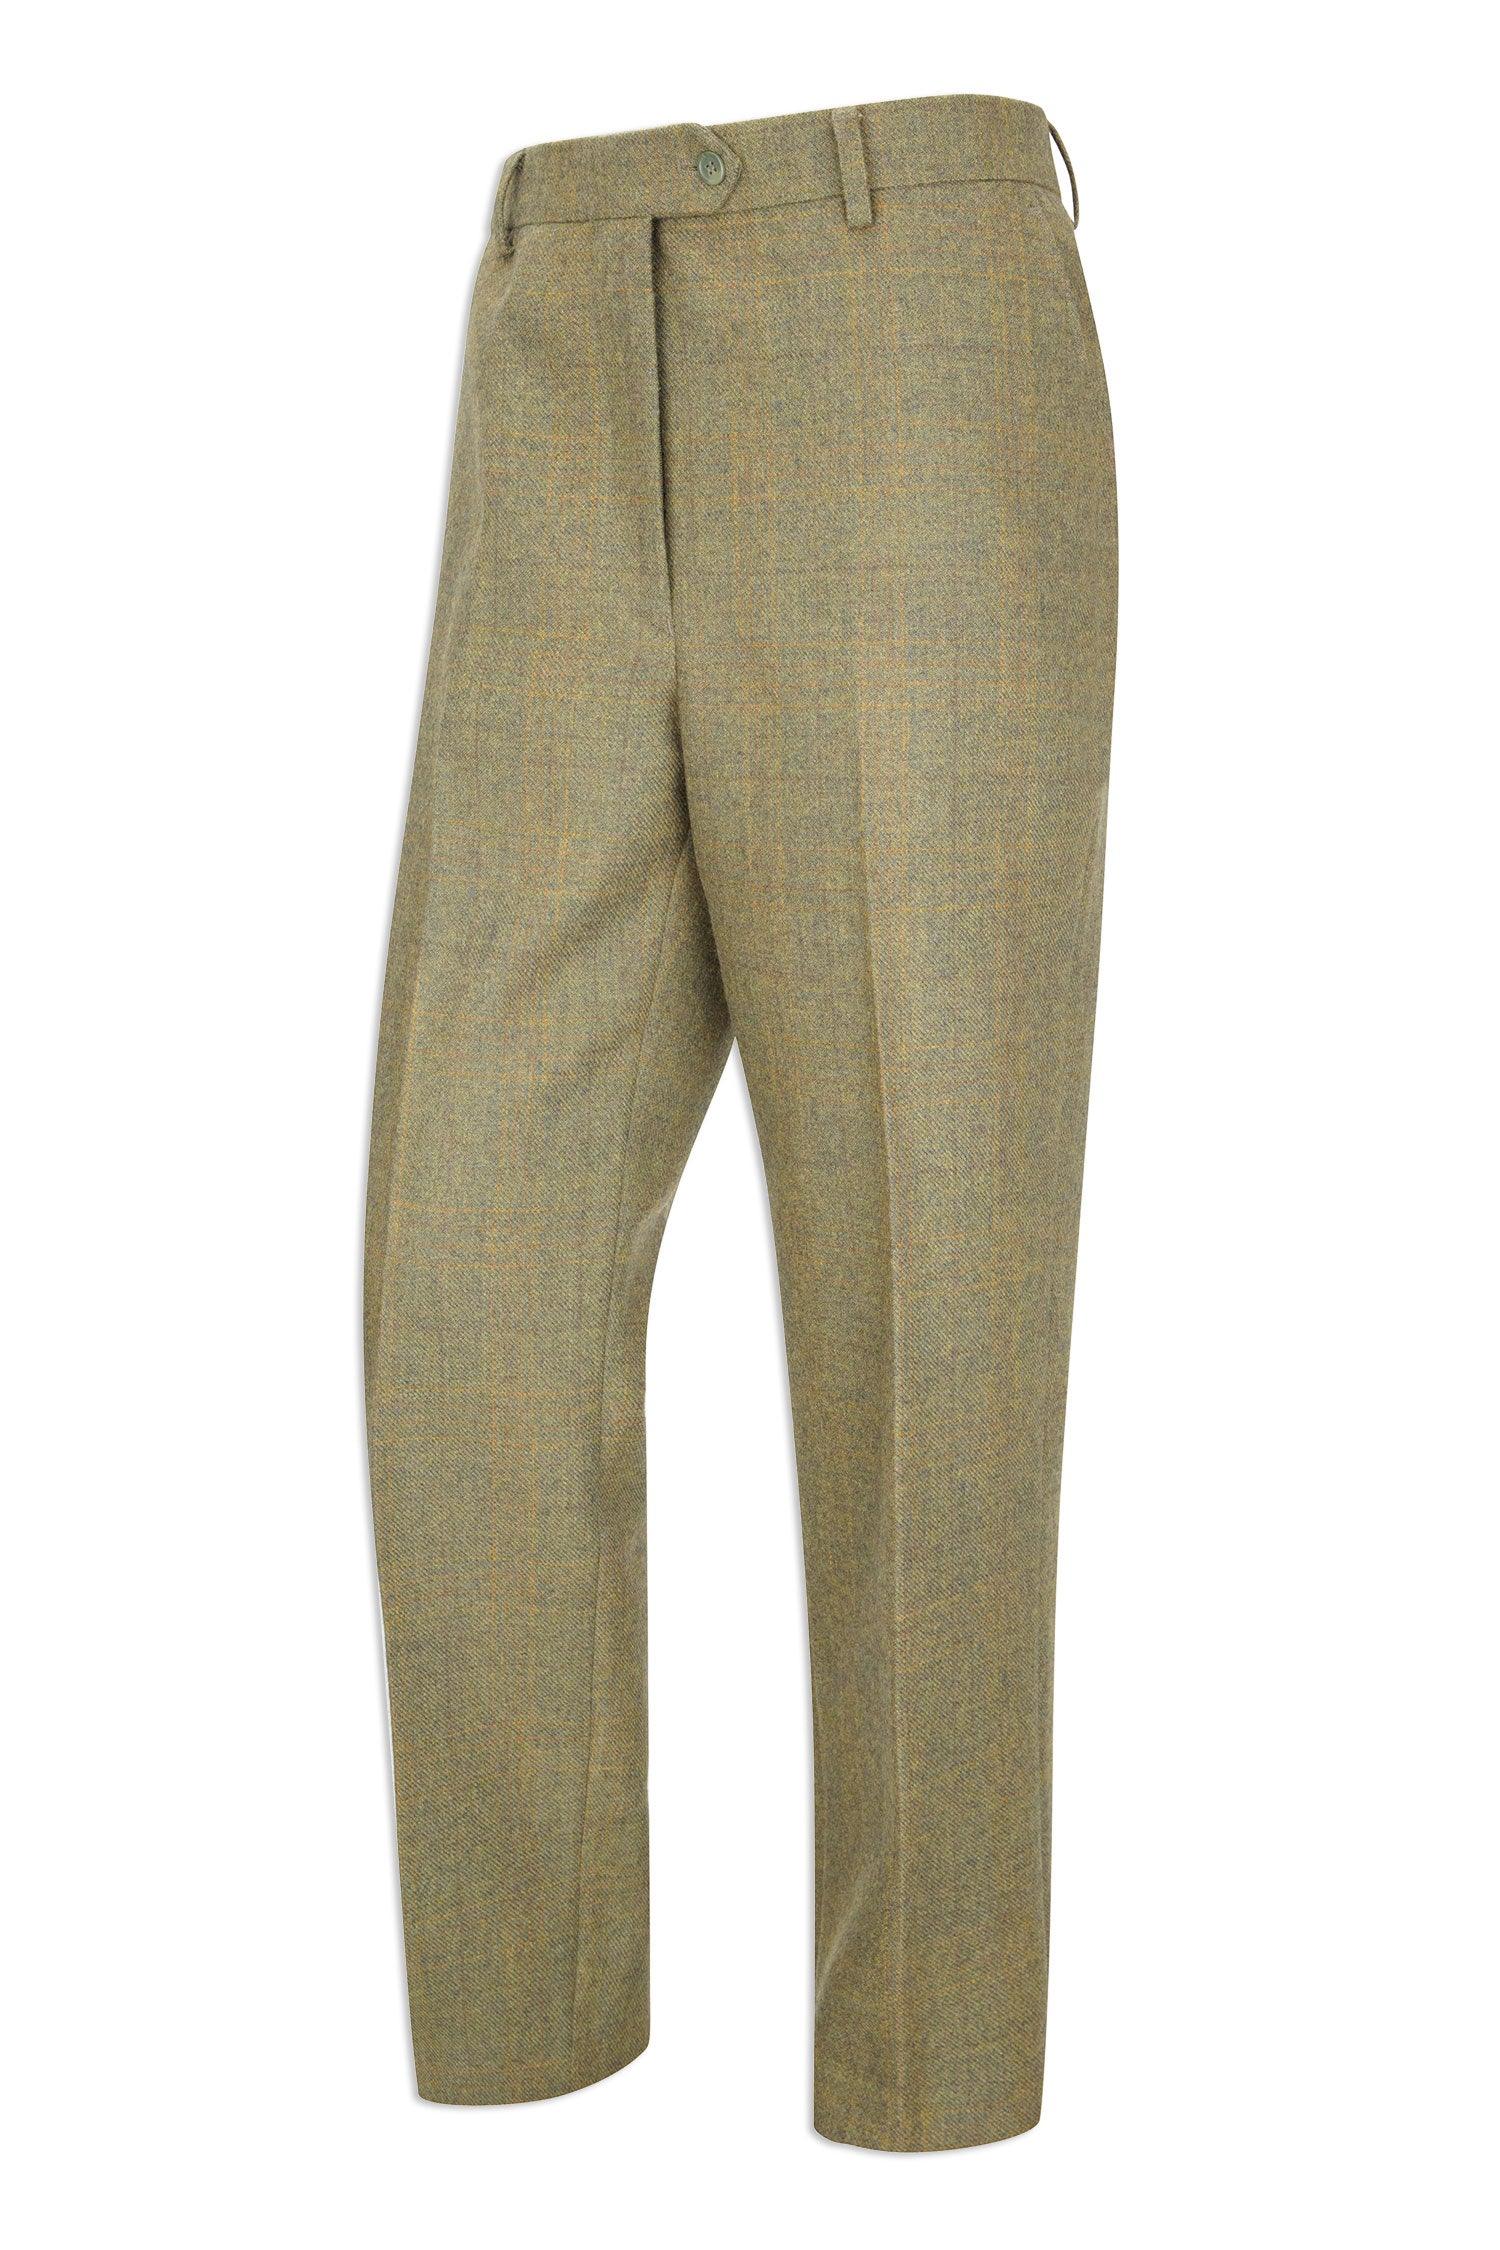 Hoggs of Fife Kinloch Tweed Trousers | Autumn Bracken